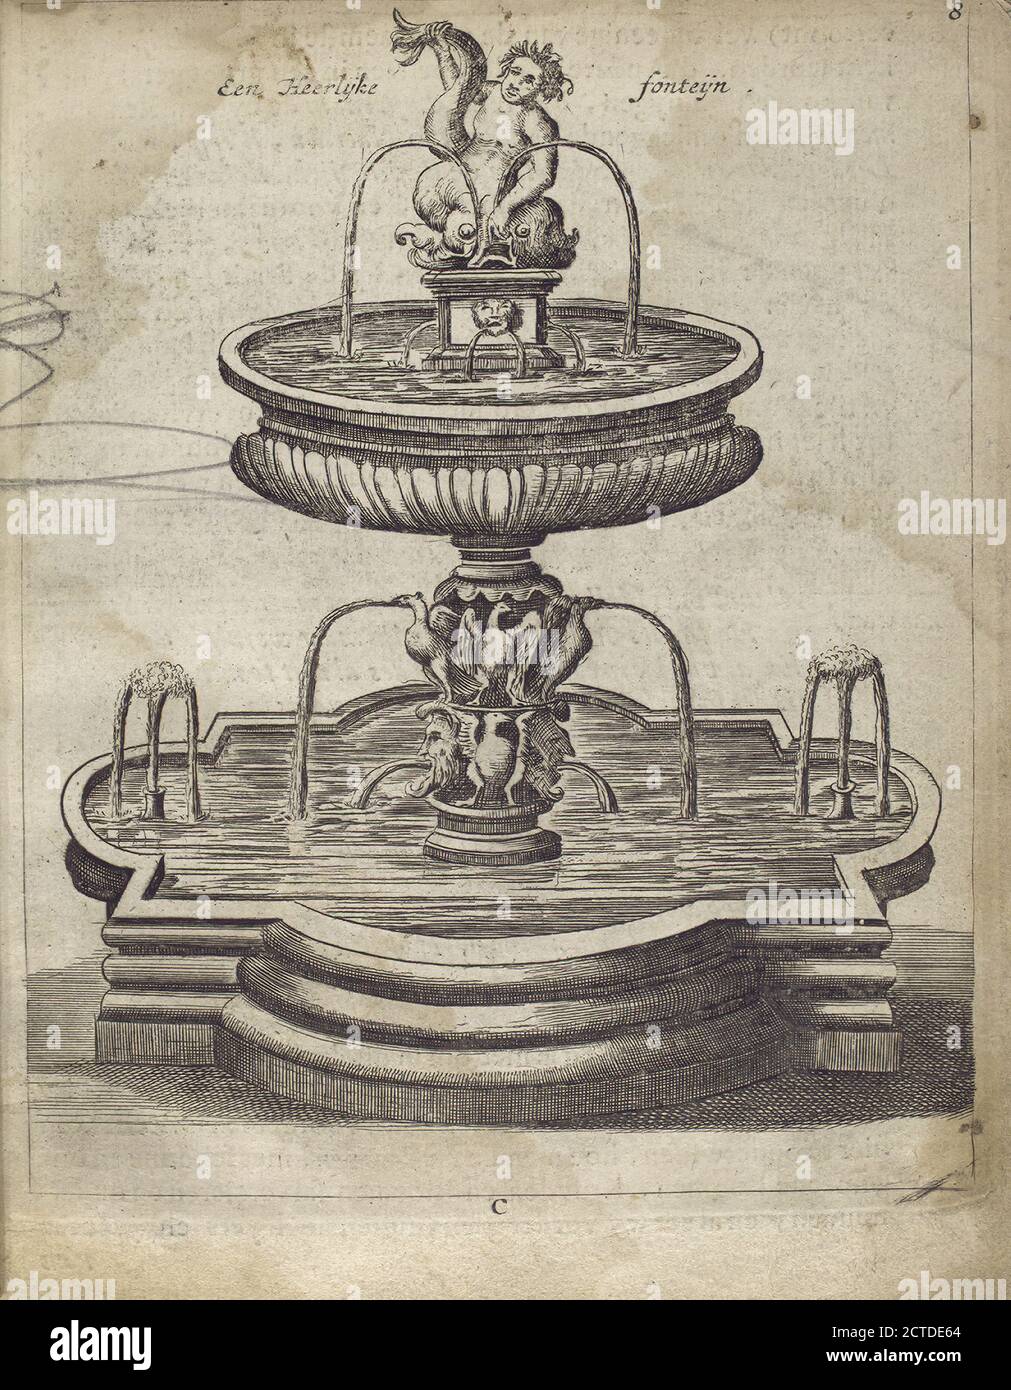 Een heerlÿke fonteÿn., Standbild, Drucke, 1683 Stockfoto